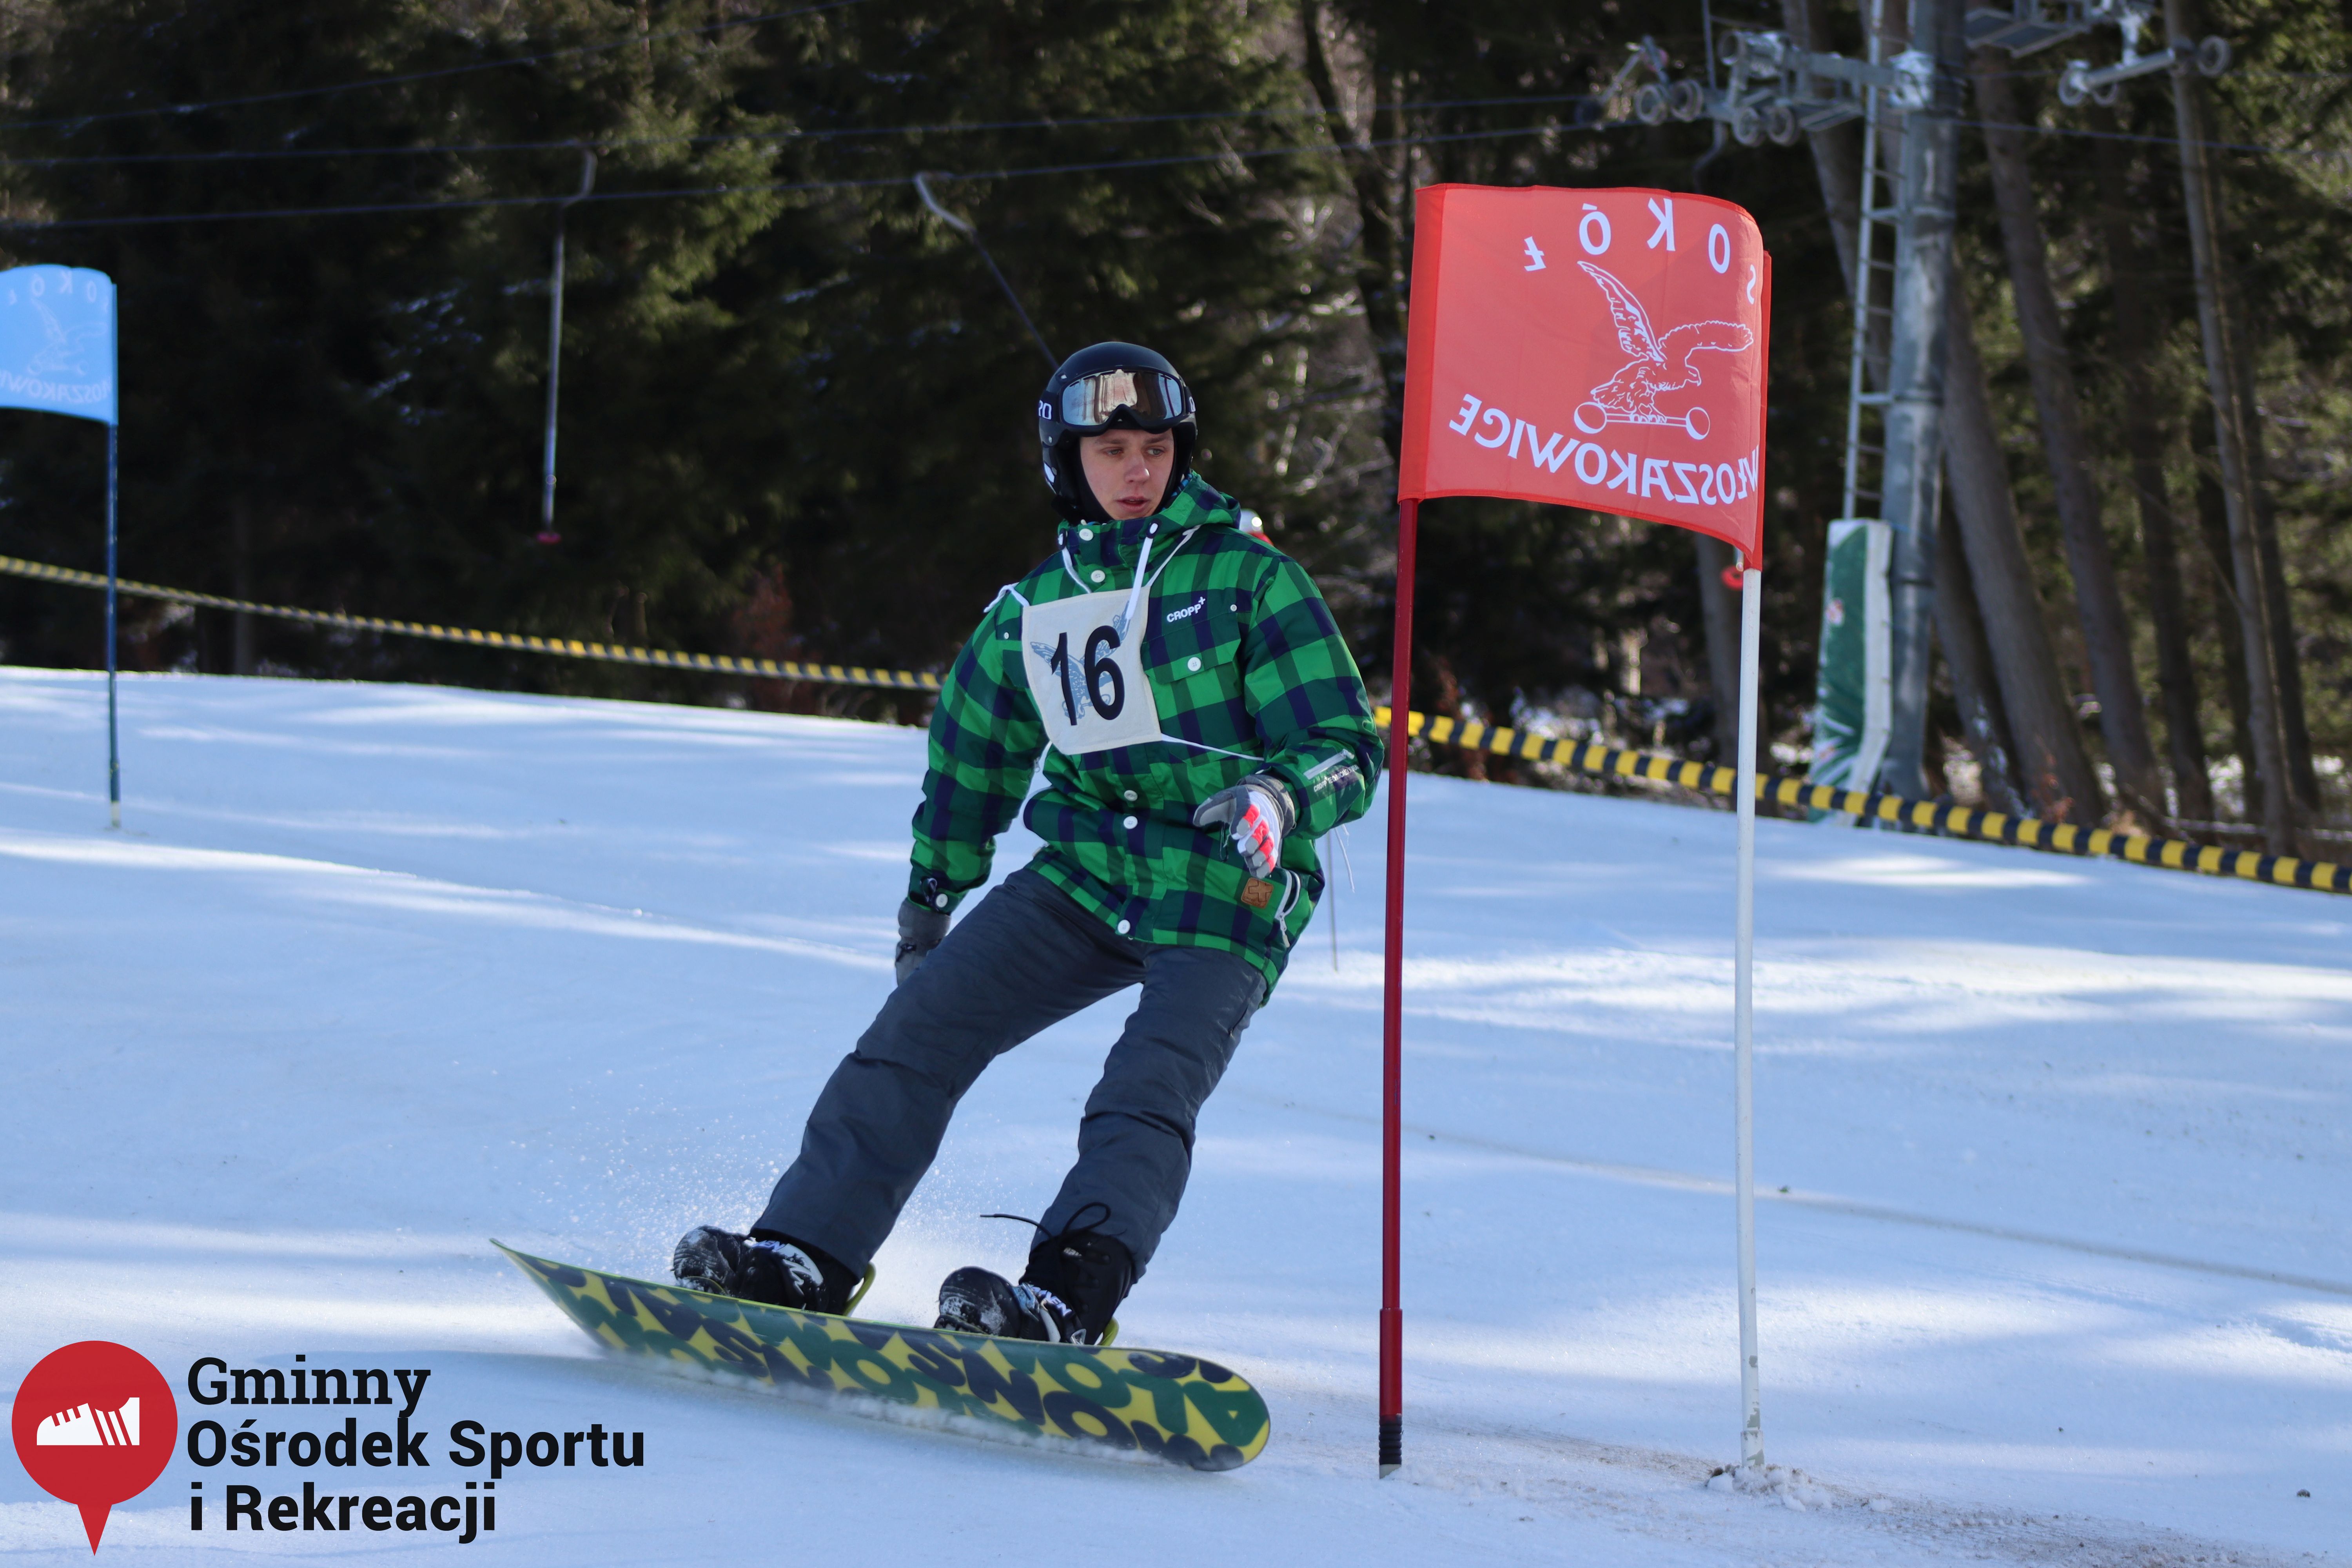 2022.02.12 - 18. Mistrzostwa Gminy Woszakowice w narciarstwie067.jpg - 1,47 MB